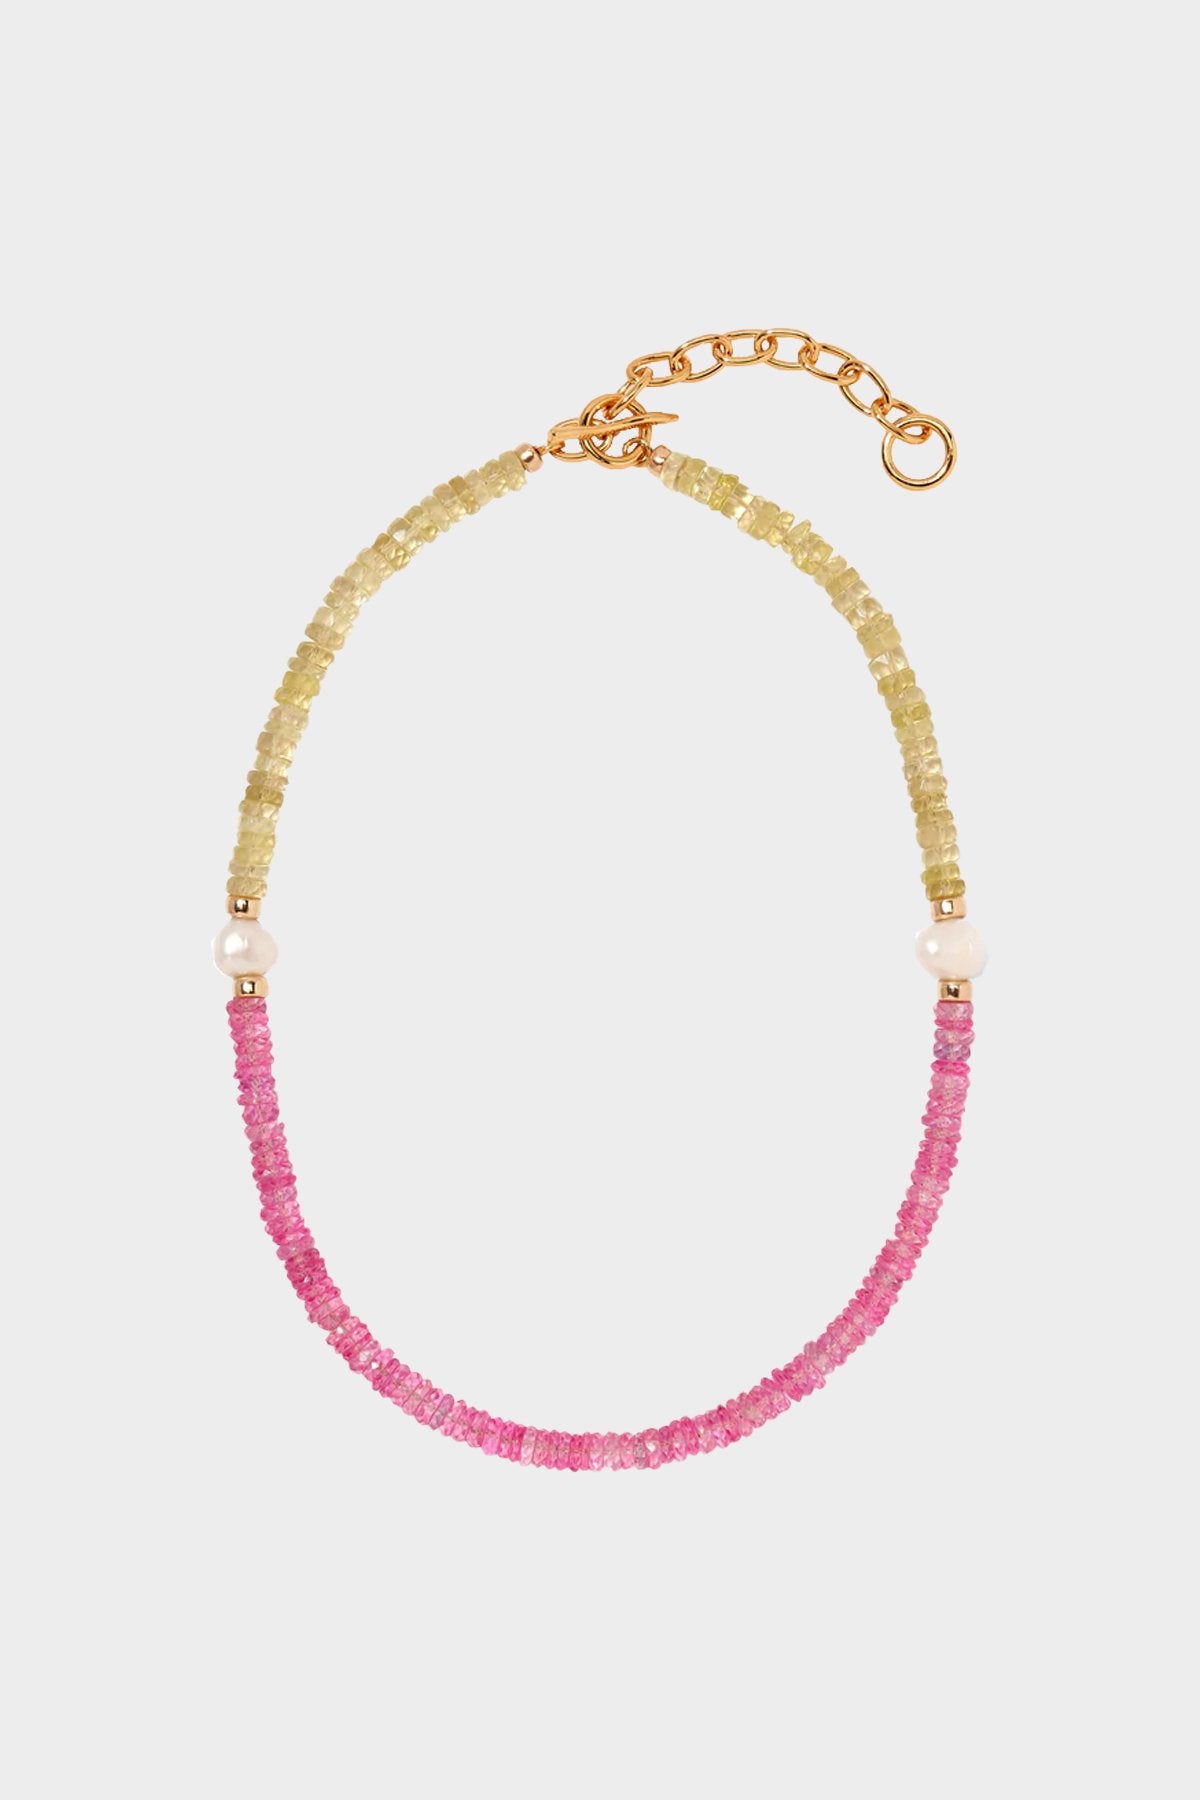 Rock Candy Necklace in Pink Lemonade - shop-olivia.com